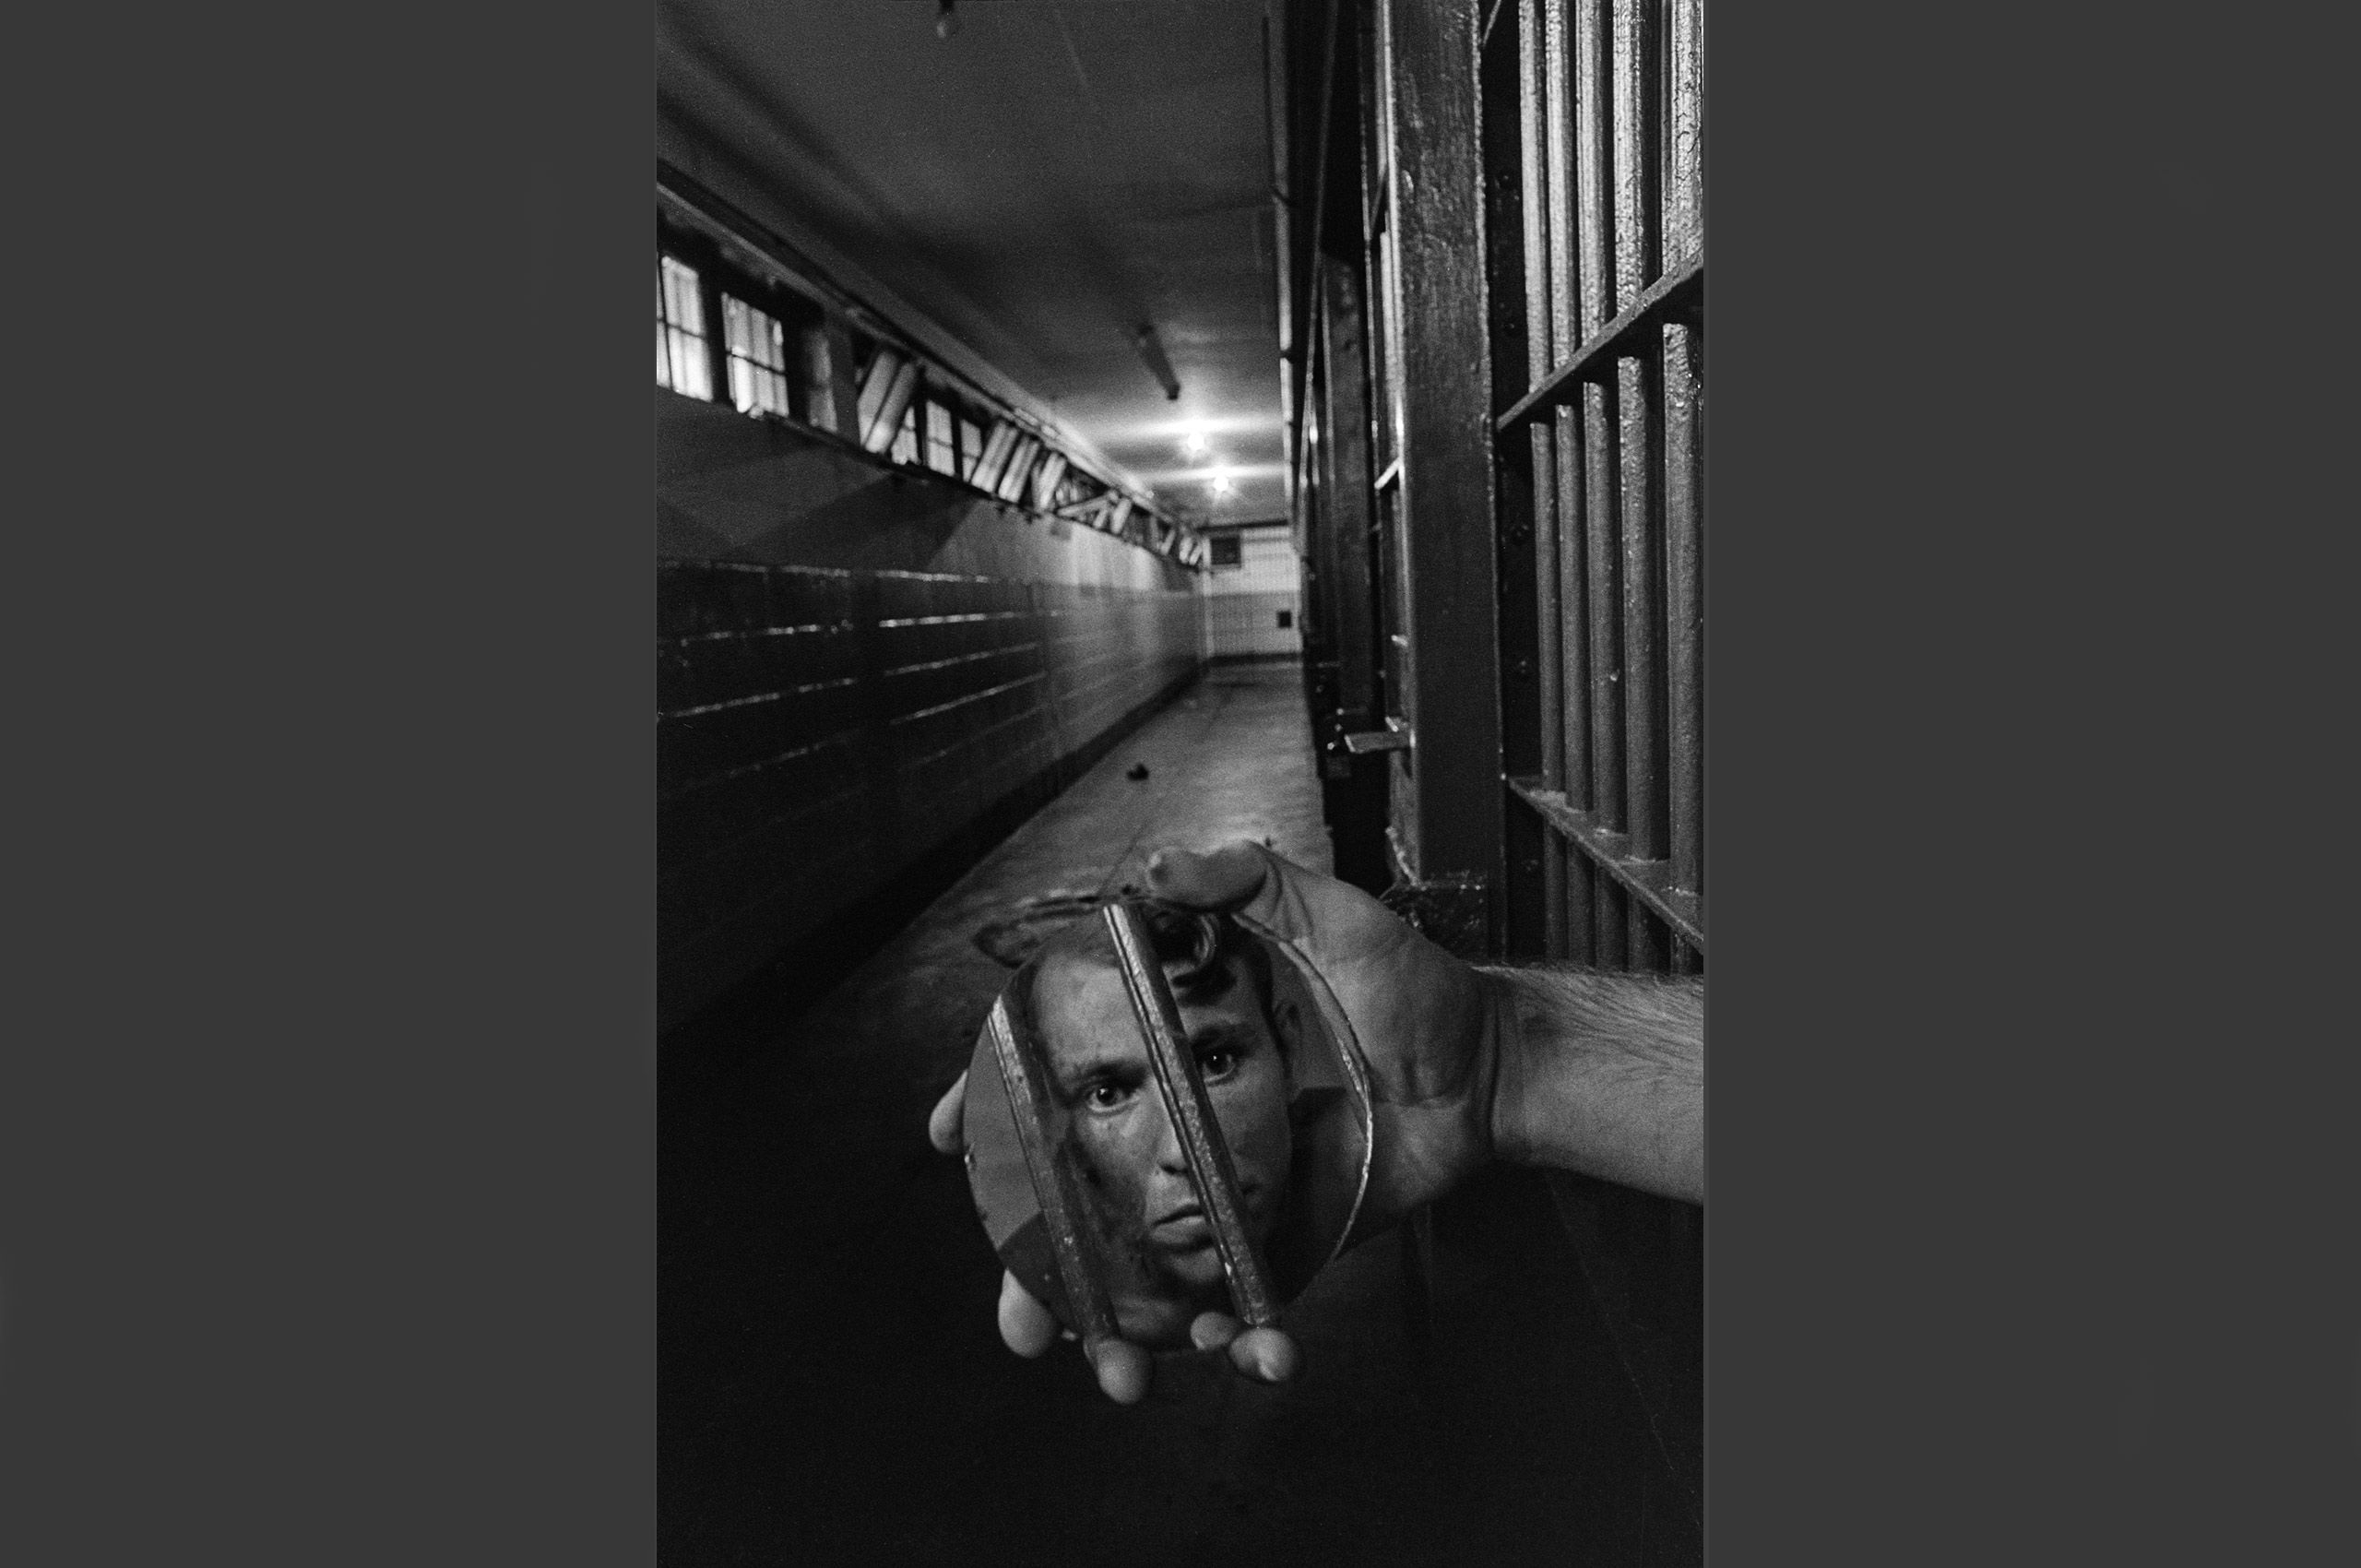 Prisoner-with-mirror.jpg